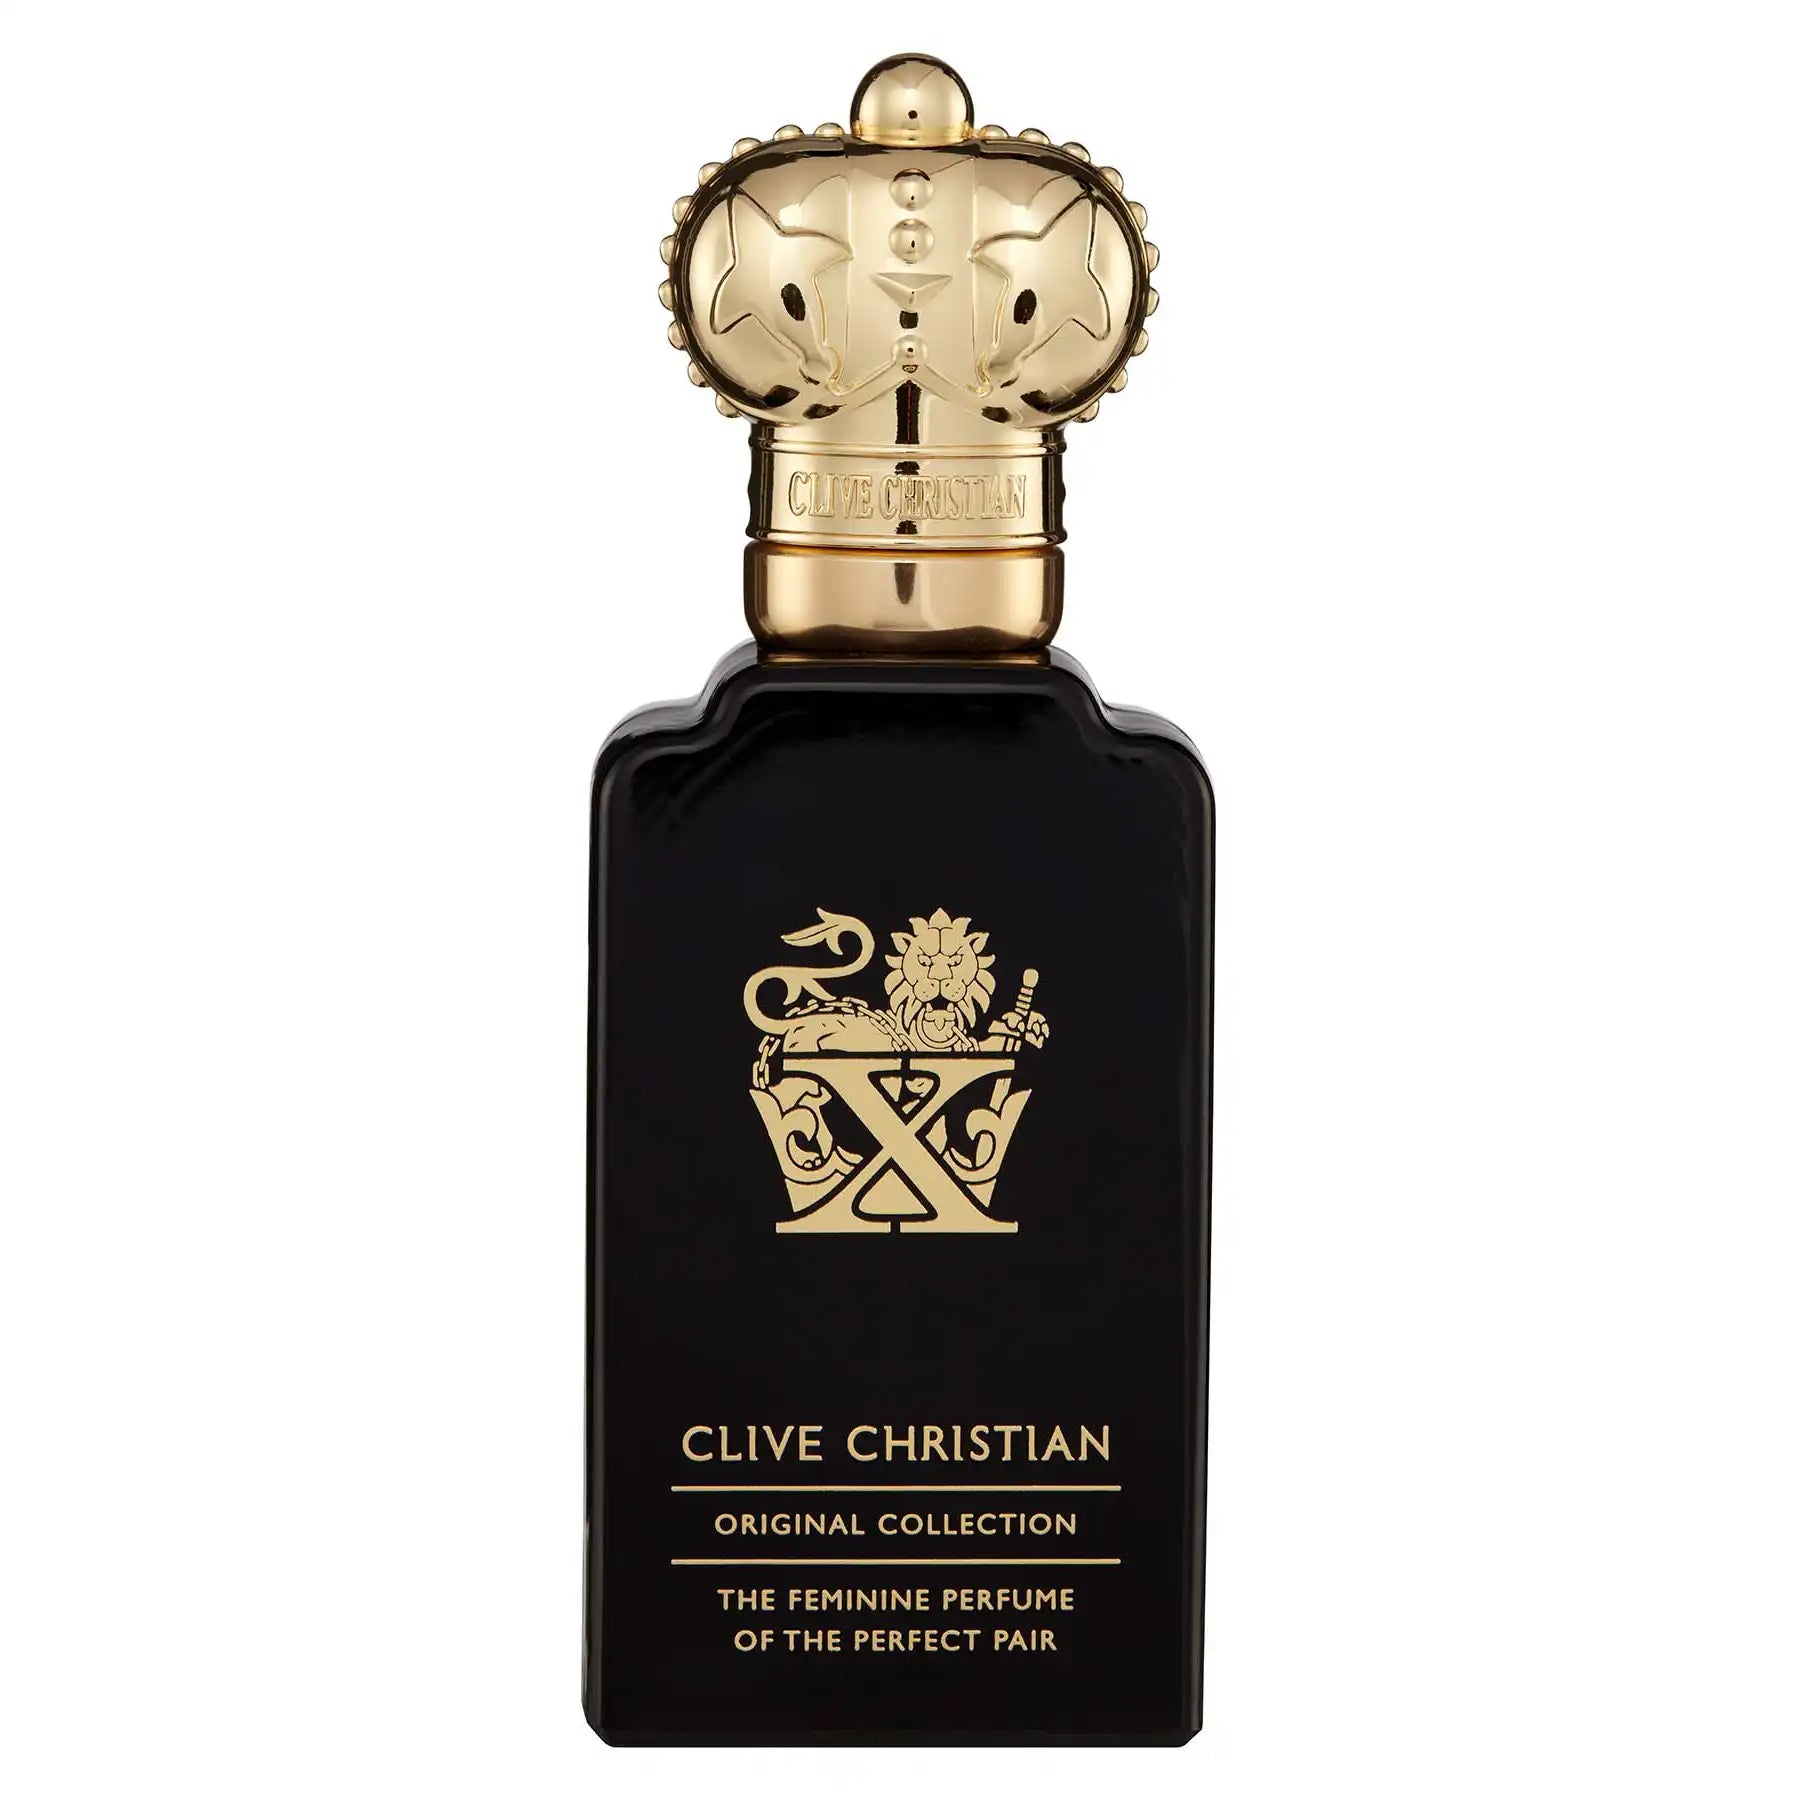 Clive Christian X Feminine Edition Eau de Parfum 50ml